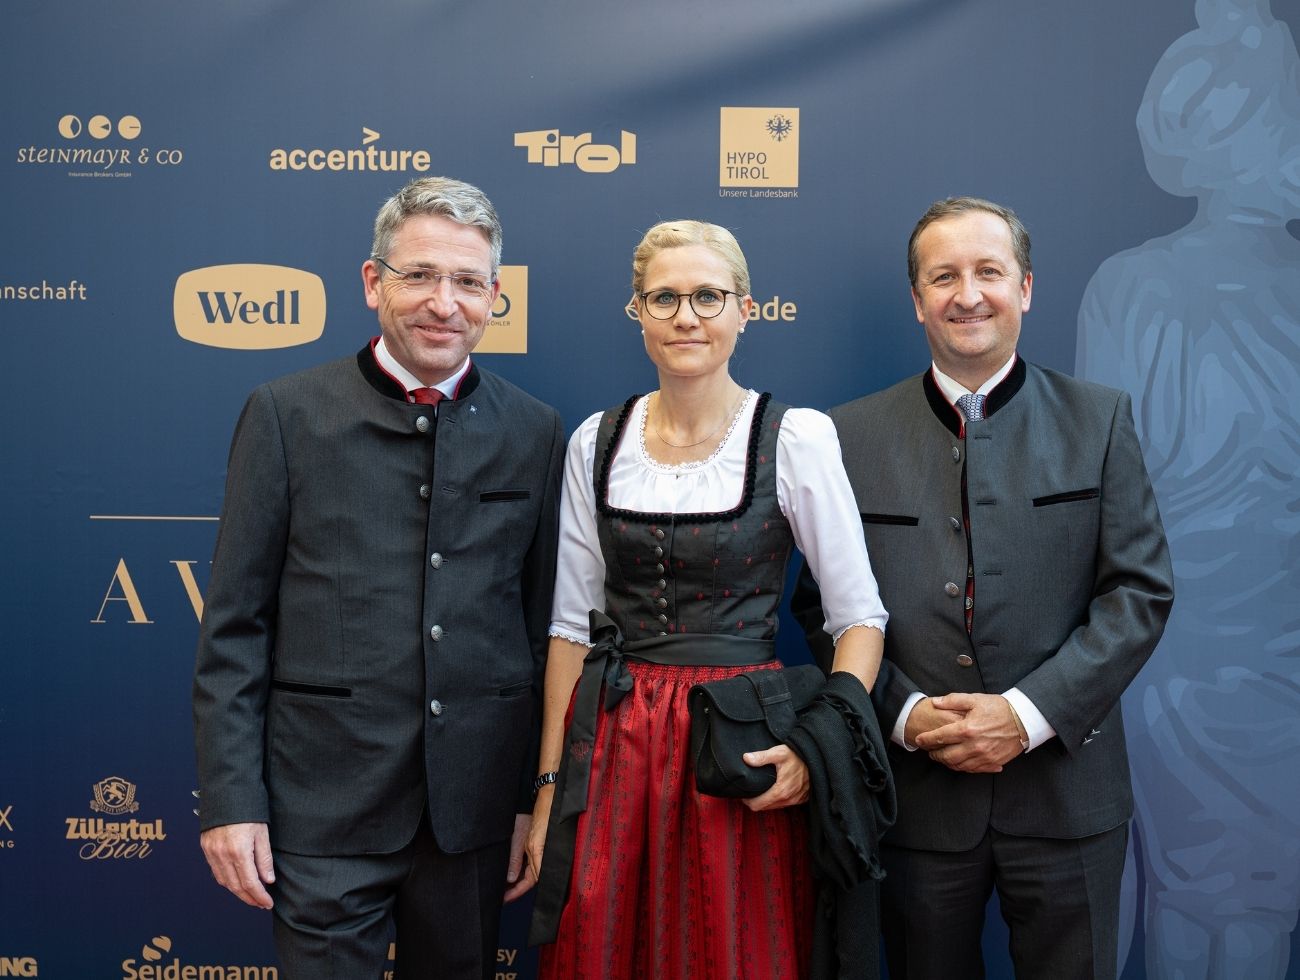 Alexander Wei, Susanne Endl und Andreas Stadler (alle Hypo Tyrol)